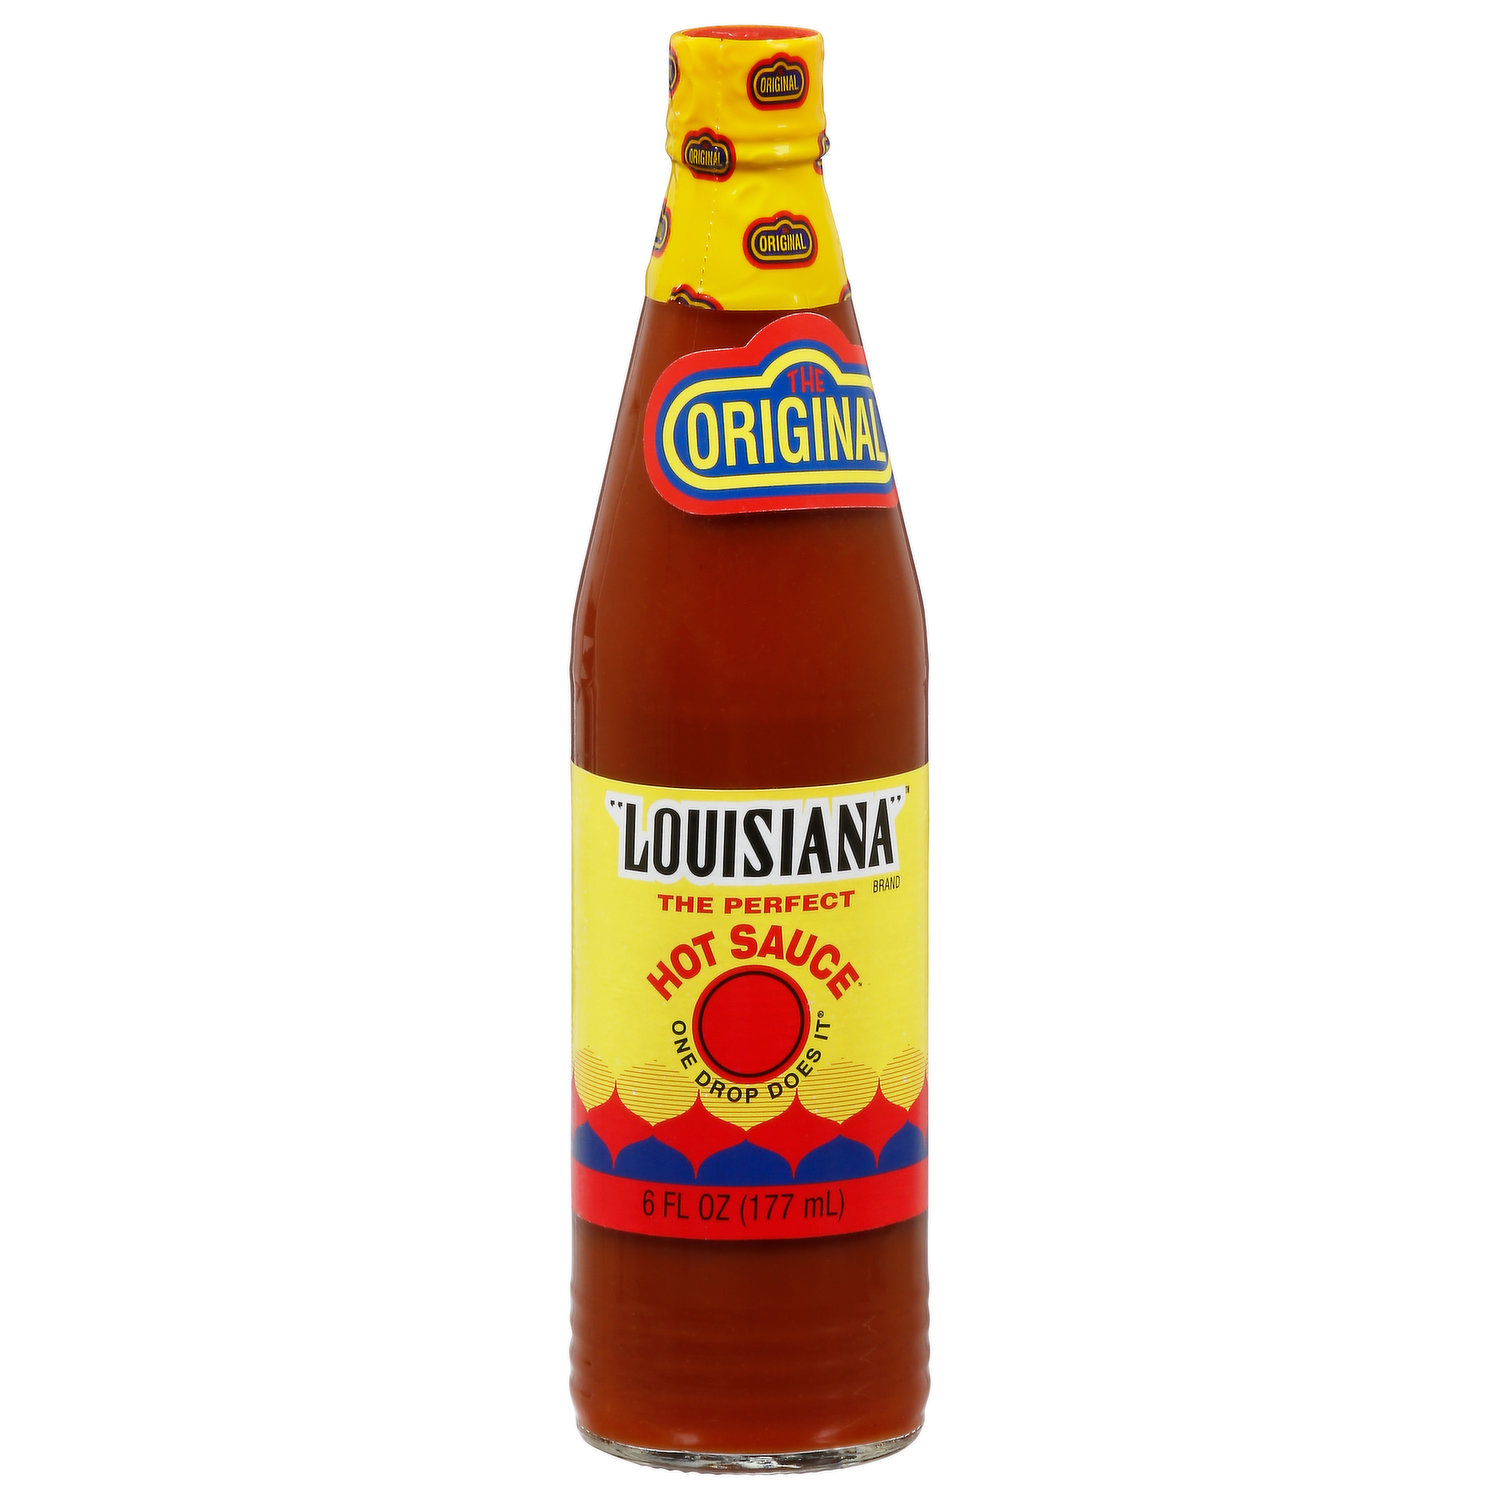 Original - Louisiana Hot Sauce